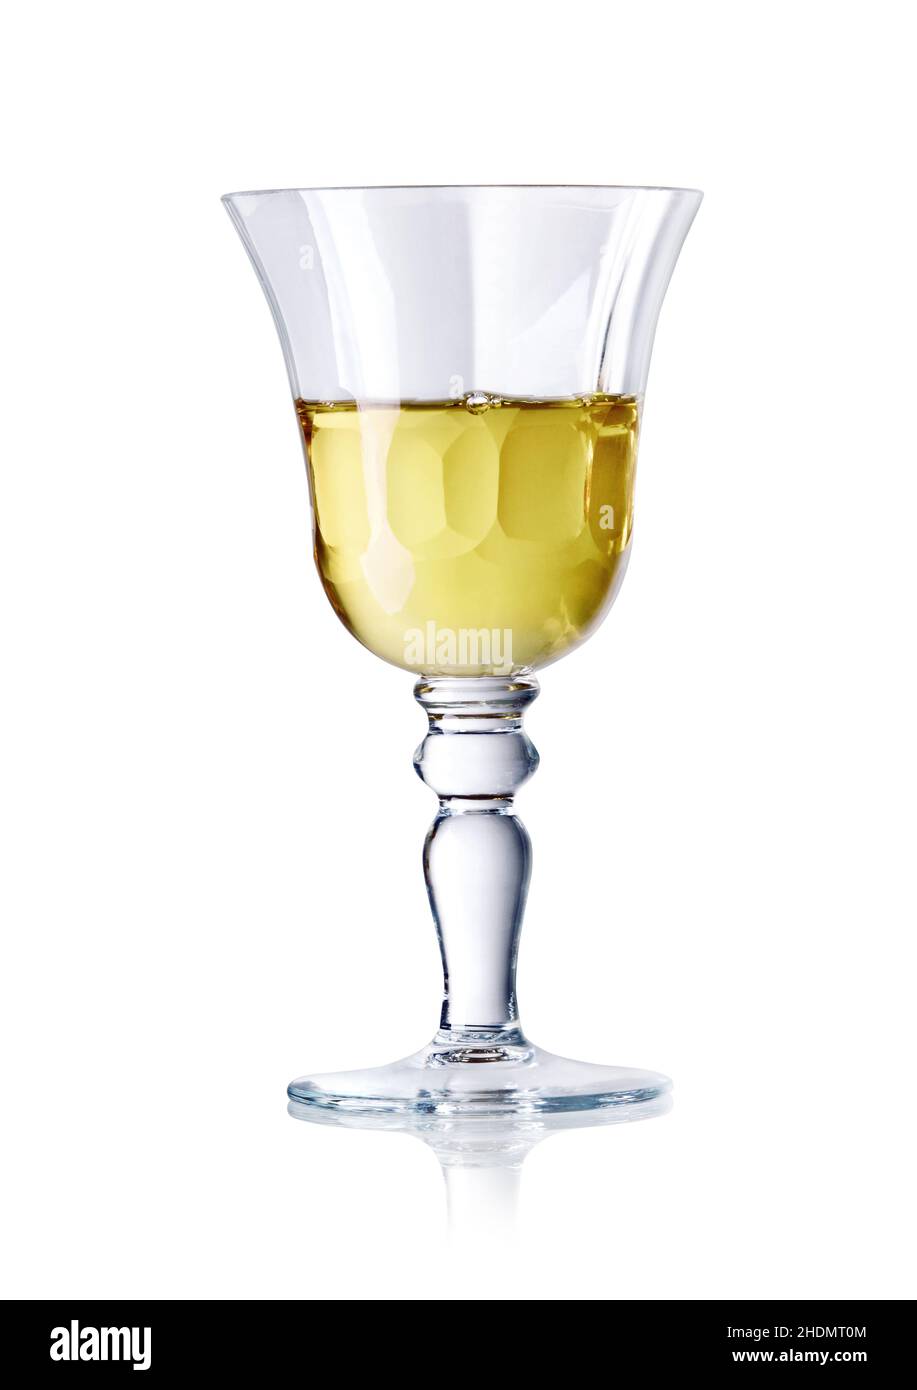 vino bianco, vetro cristallino, vini bianchi Foto Stock